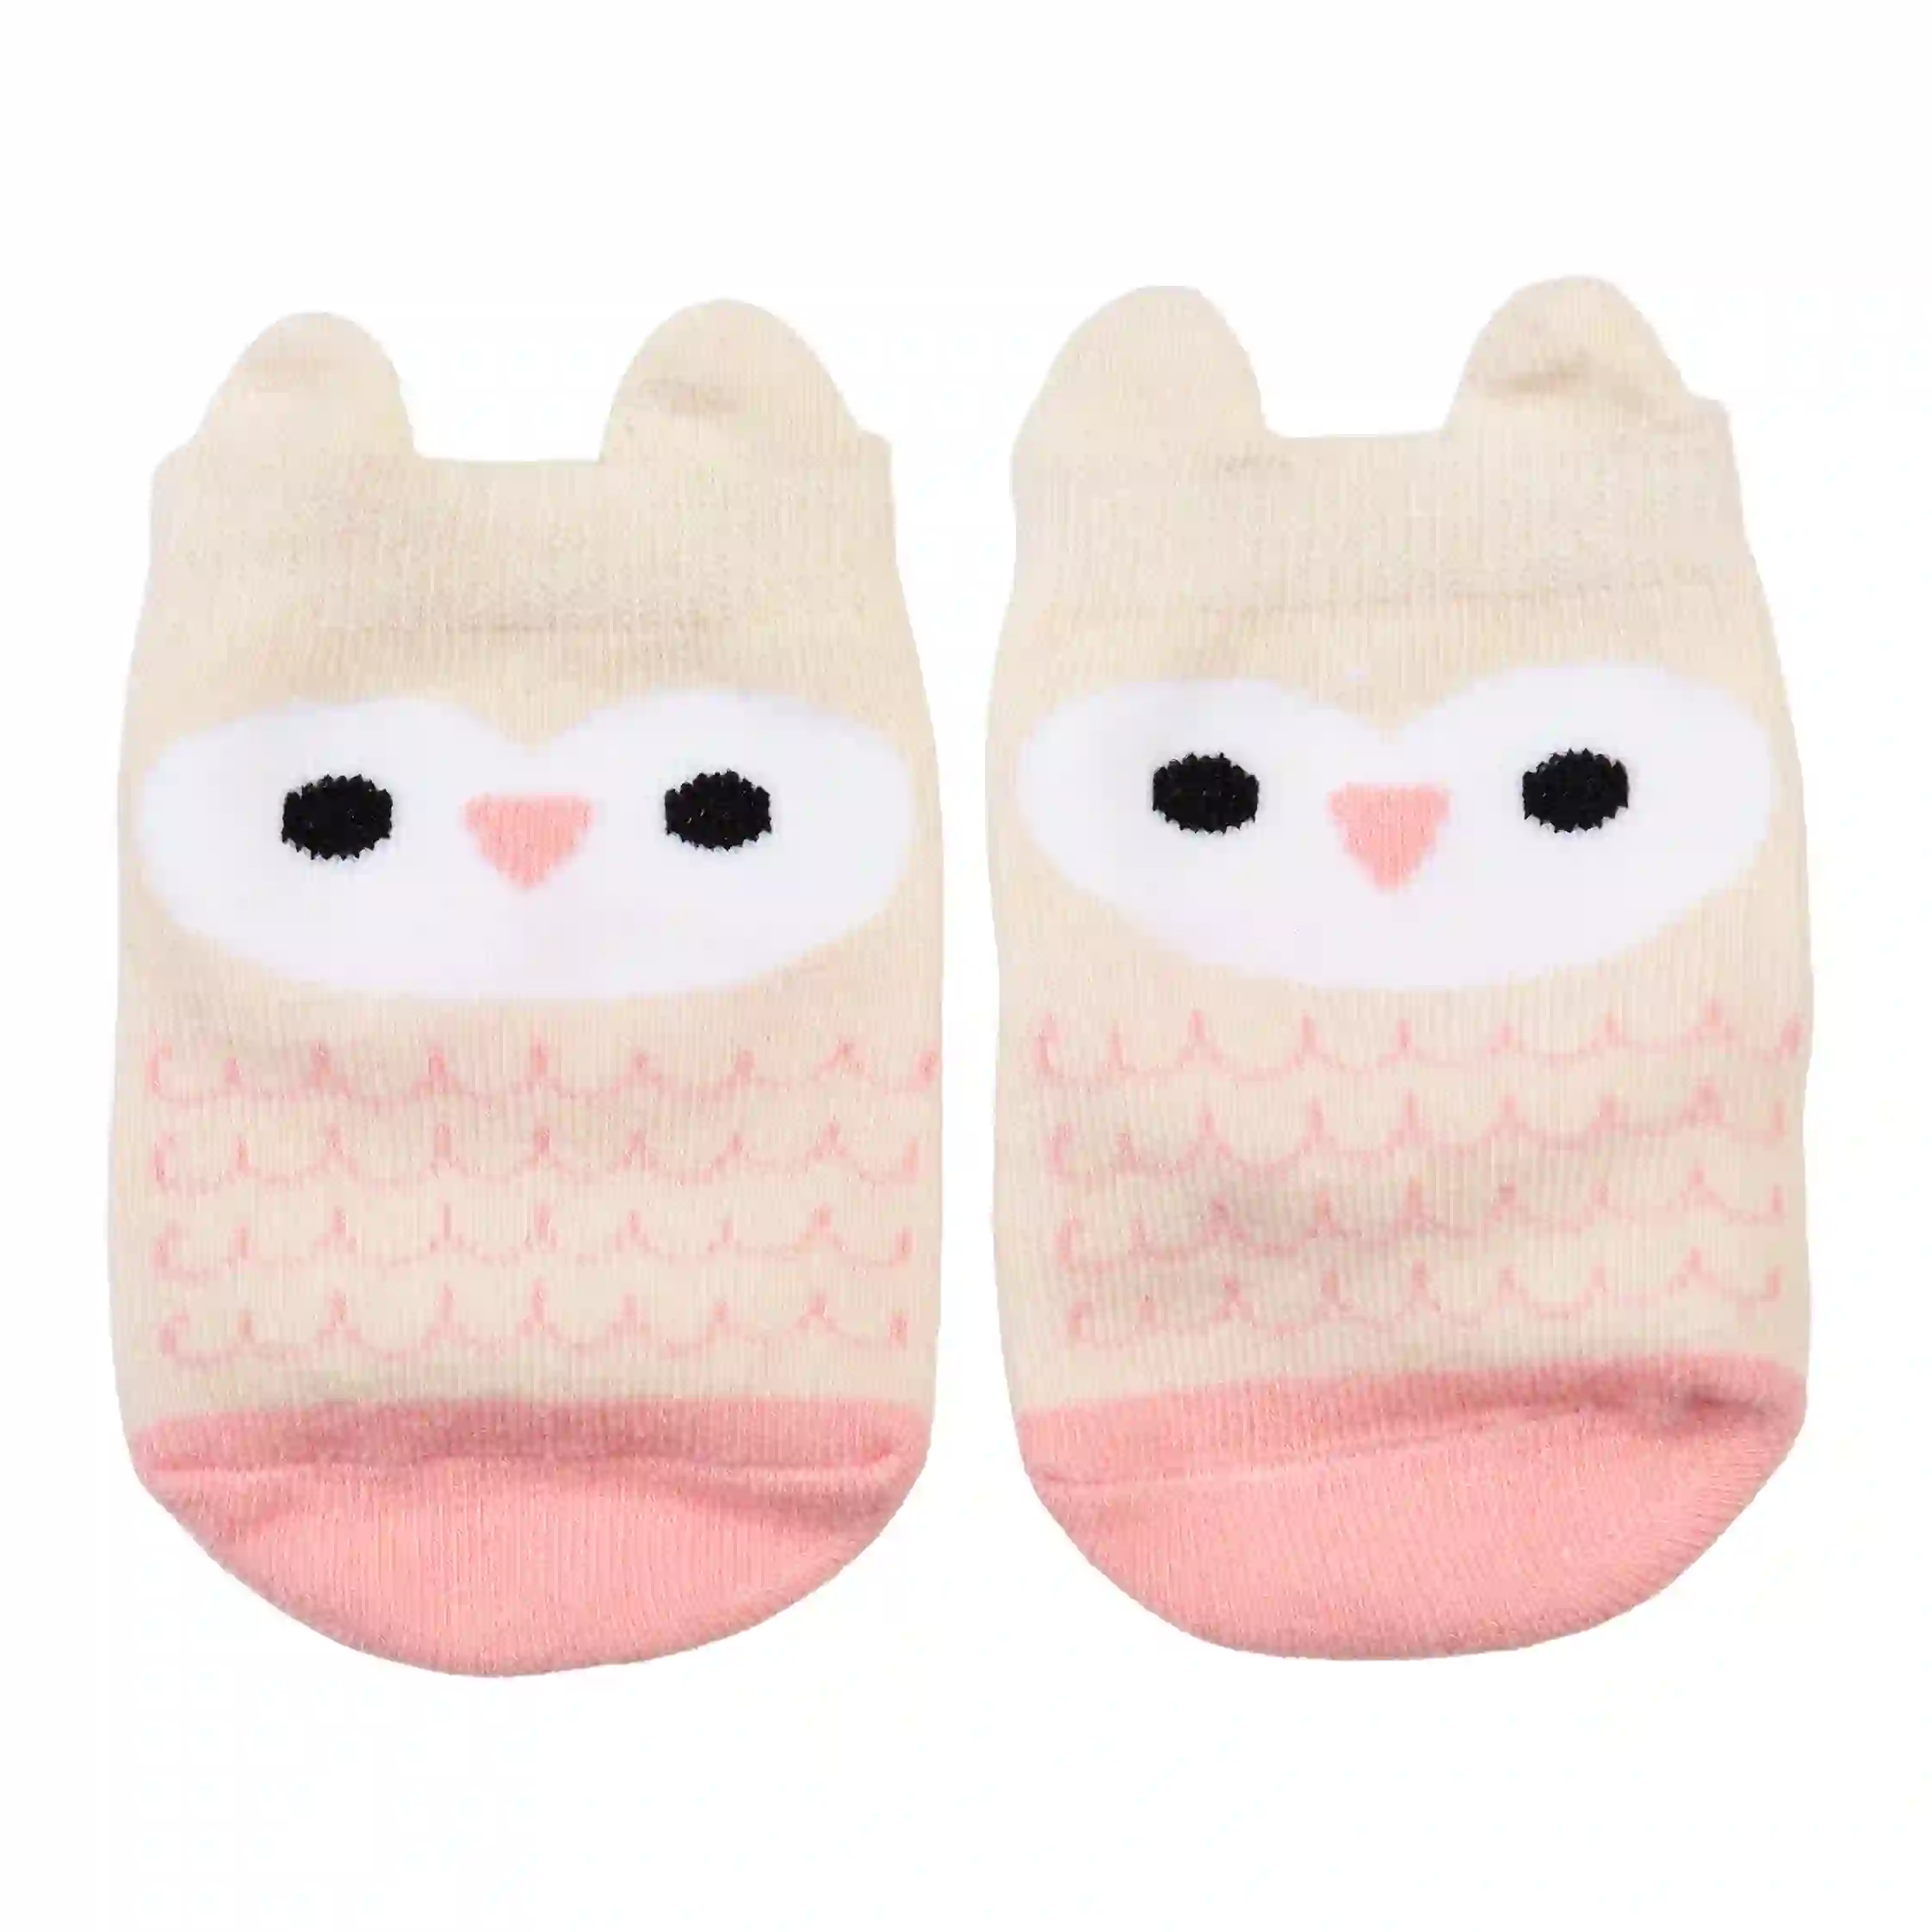 pair of baby socks - pink owl